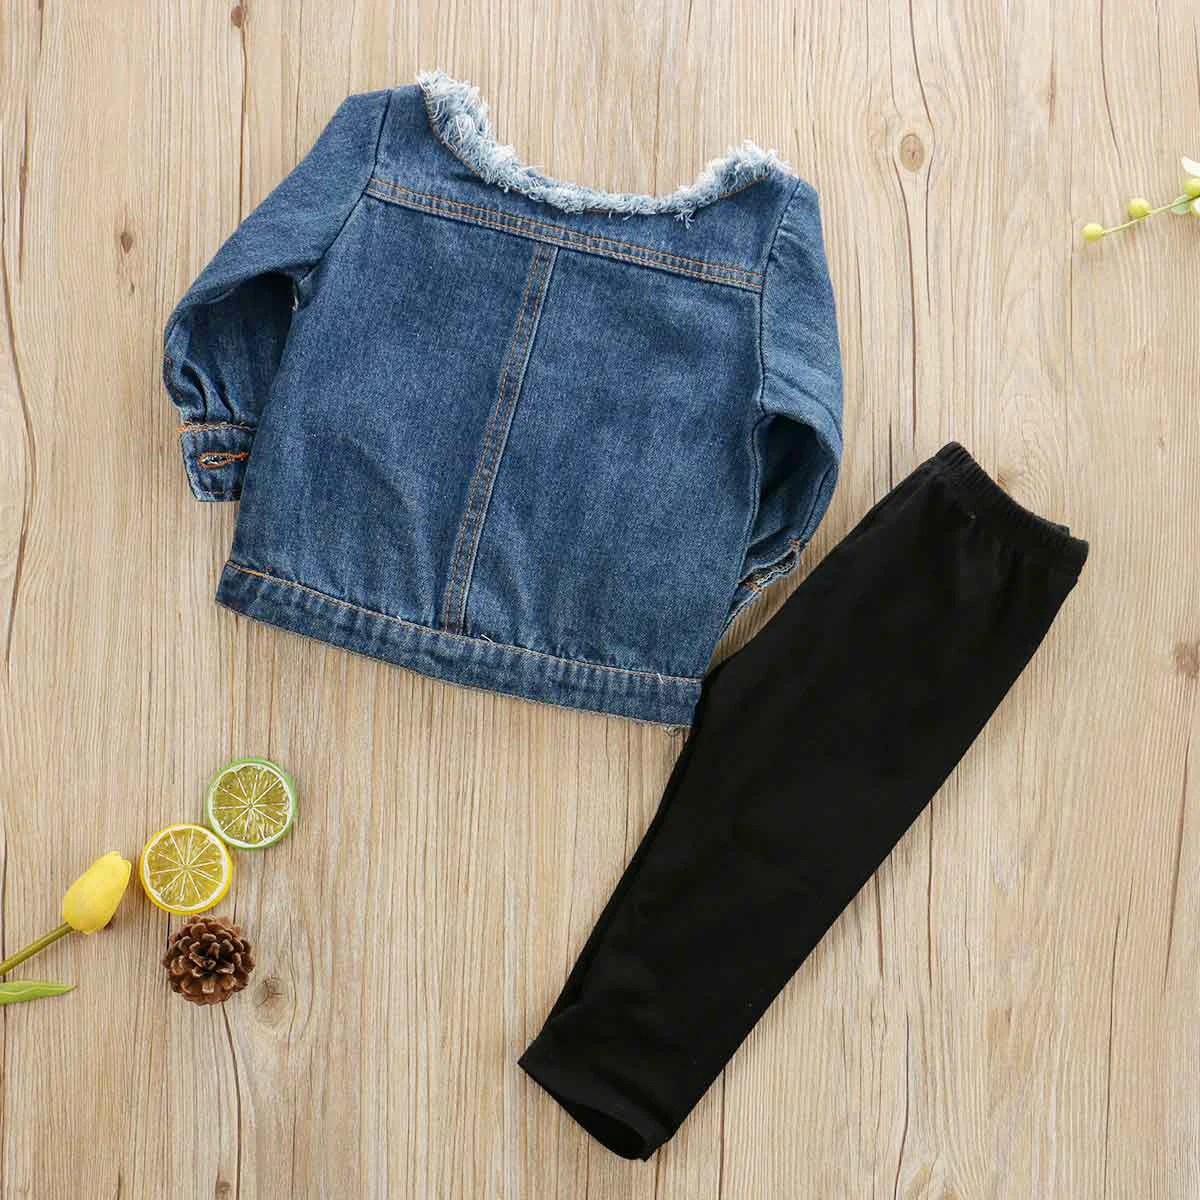 Imcute/Коллекция года, популярные детские комплекты для маленьких девочек, джинсовые топы с открытыми плечами+ штаны с прорезями комплект осенней одежды, От 1 до 6 лет